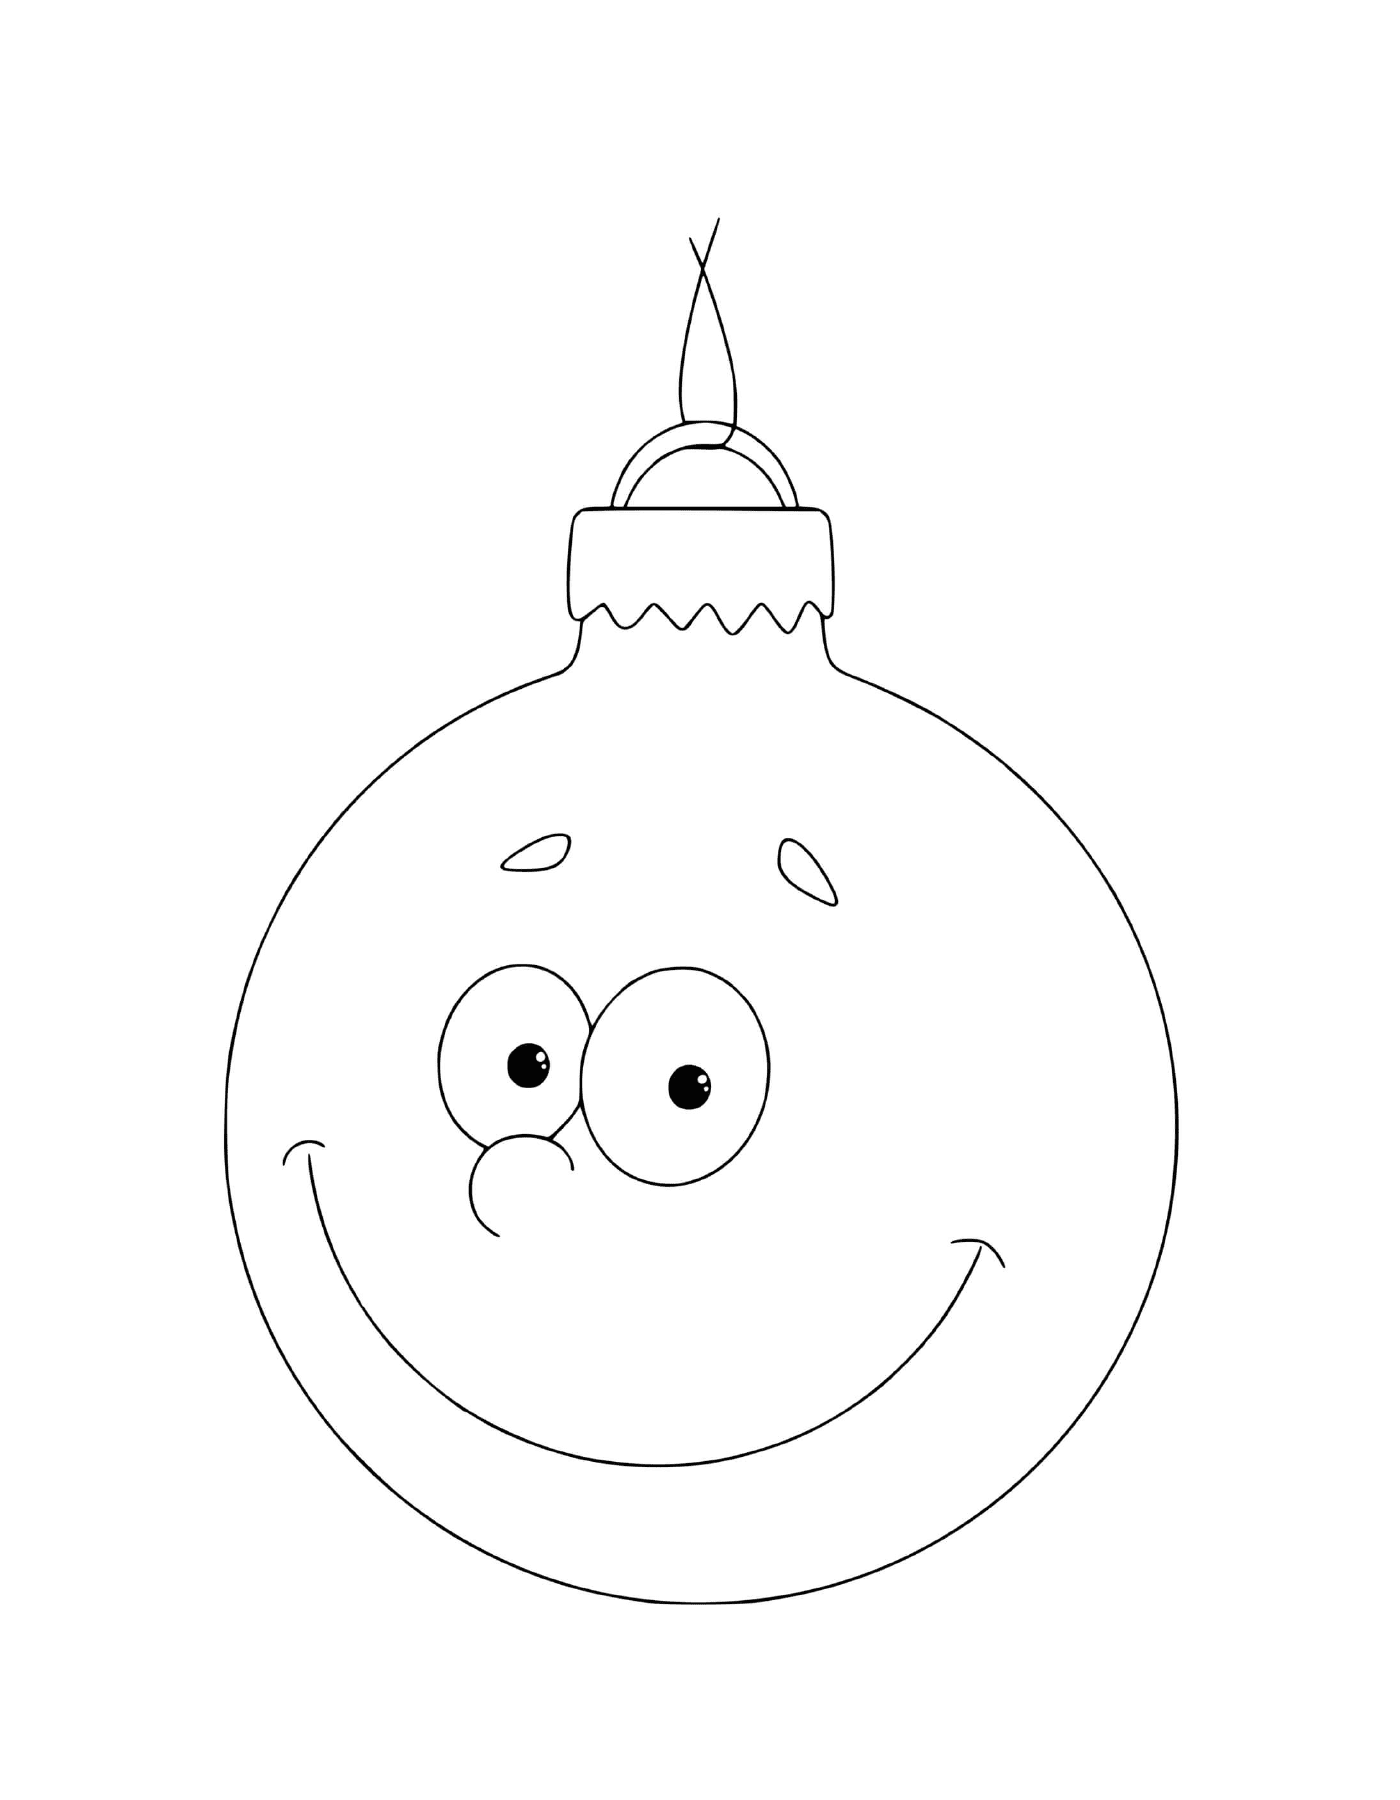  Ein Weihnachtsball mit Augen und einem Lächeln 